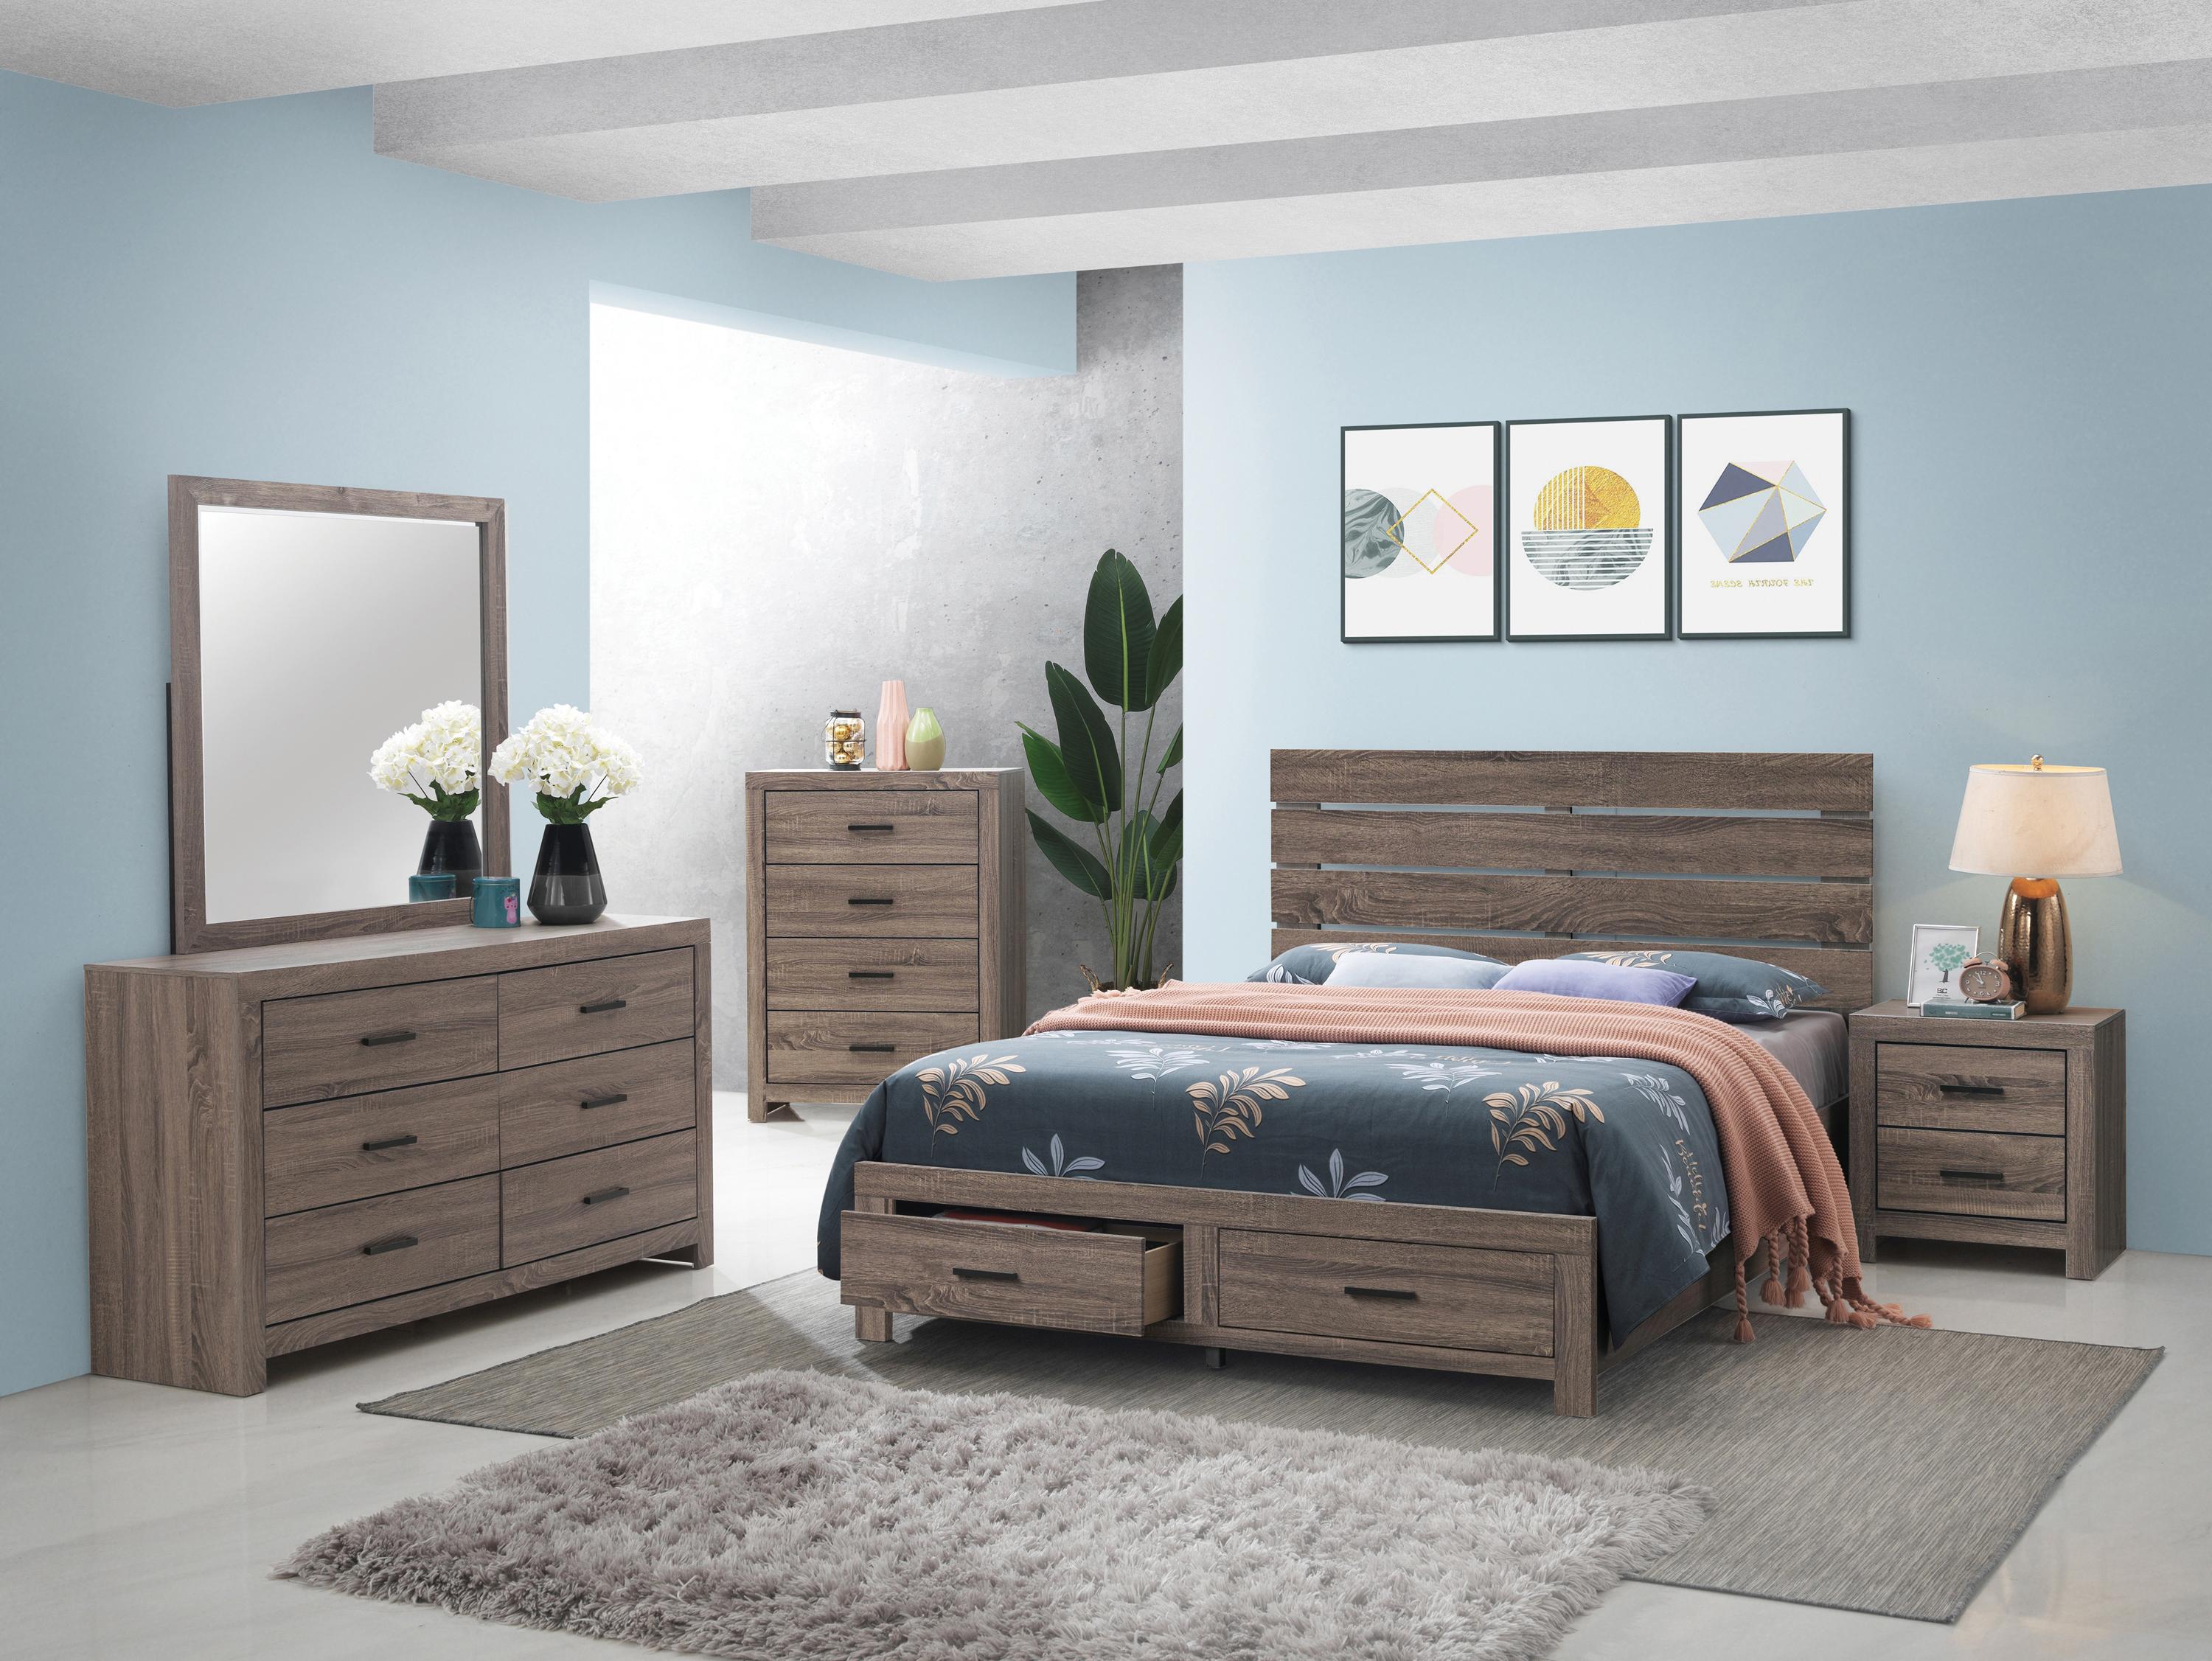 

    
Rustic Barrel Oak Wood Queen Storage Bedroom Set 5pcs Coaster 207040Q Brantford
